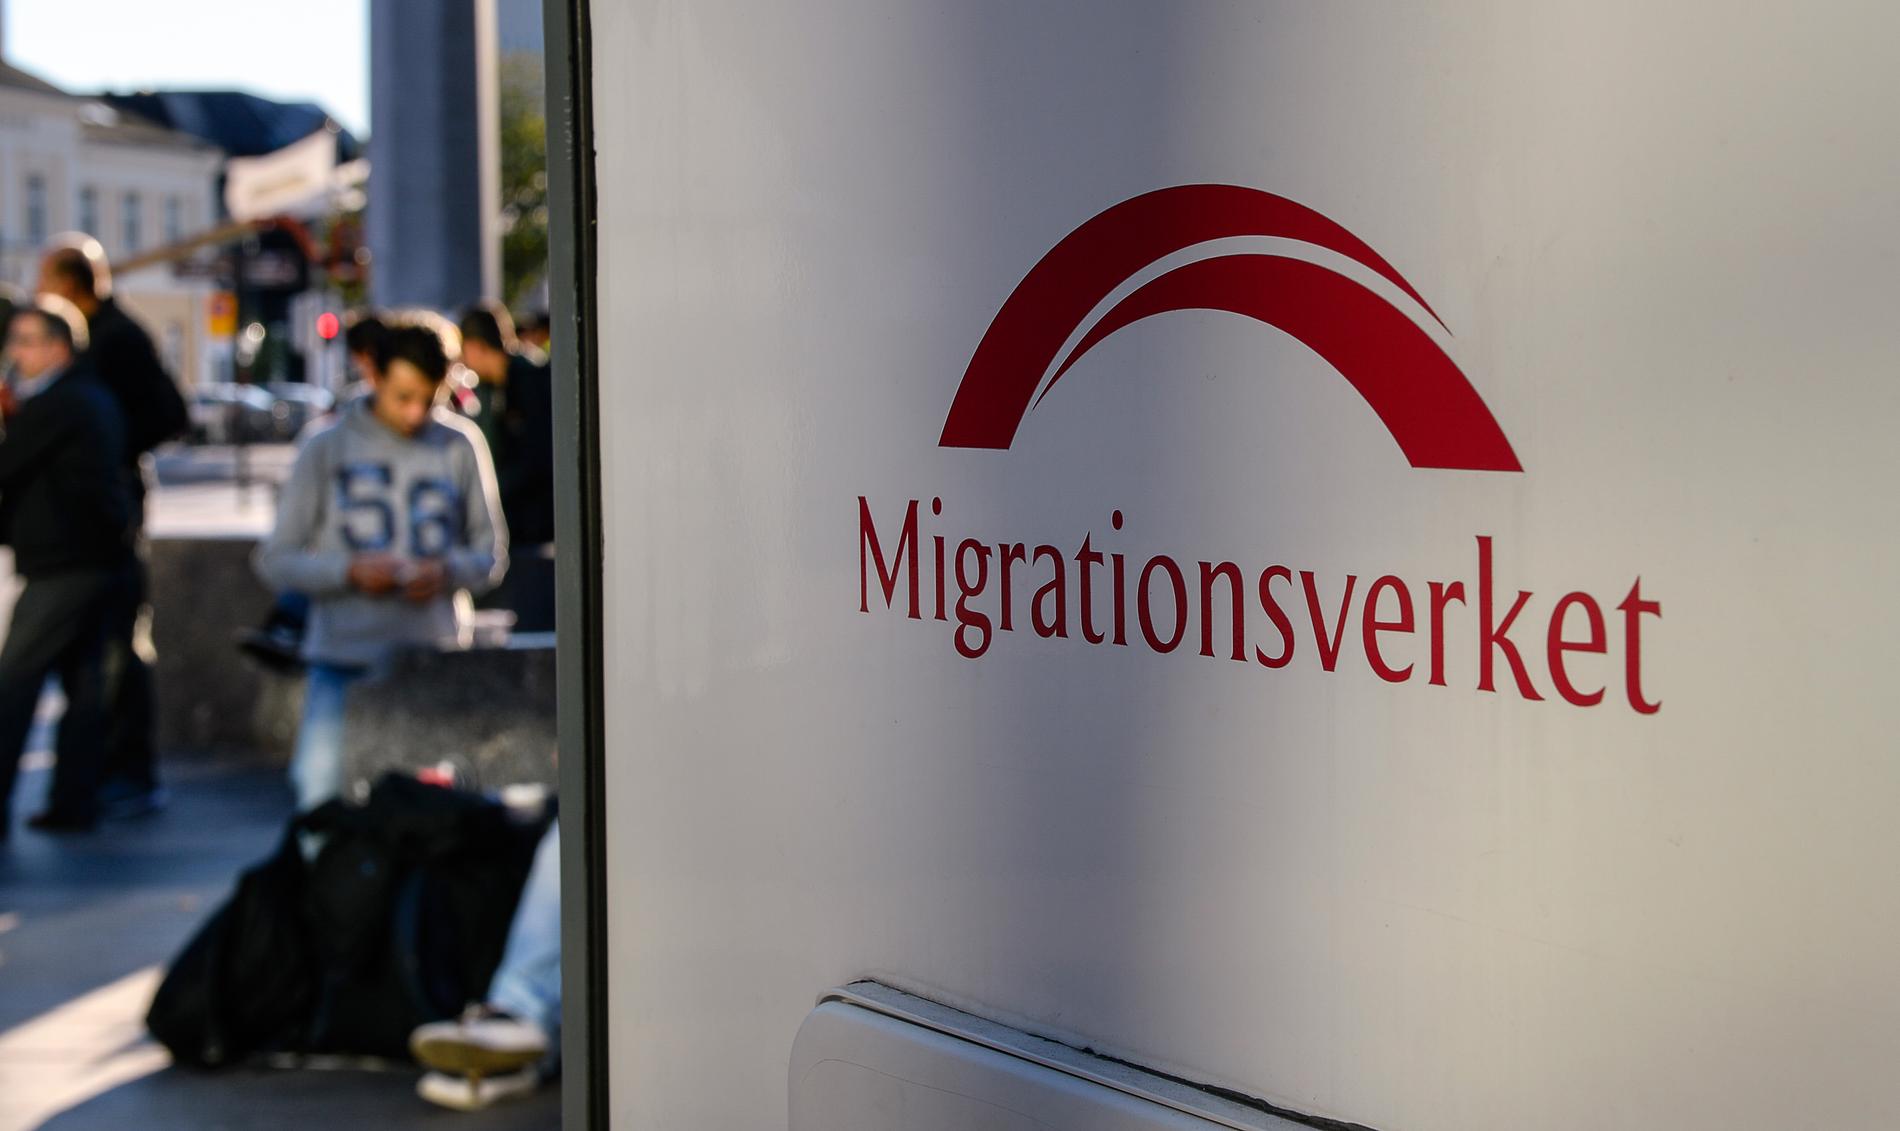 Migrationsverket befarar oroligheter på asylboenden i och med att tusentals asylsökanden ska vräkas.